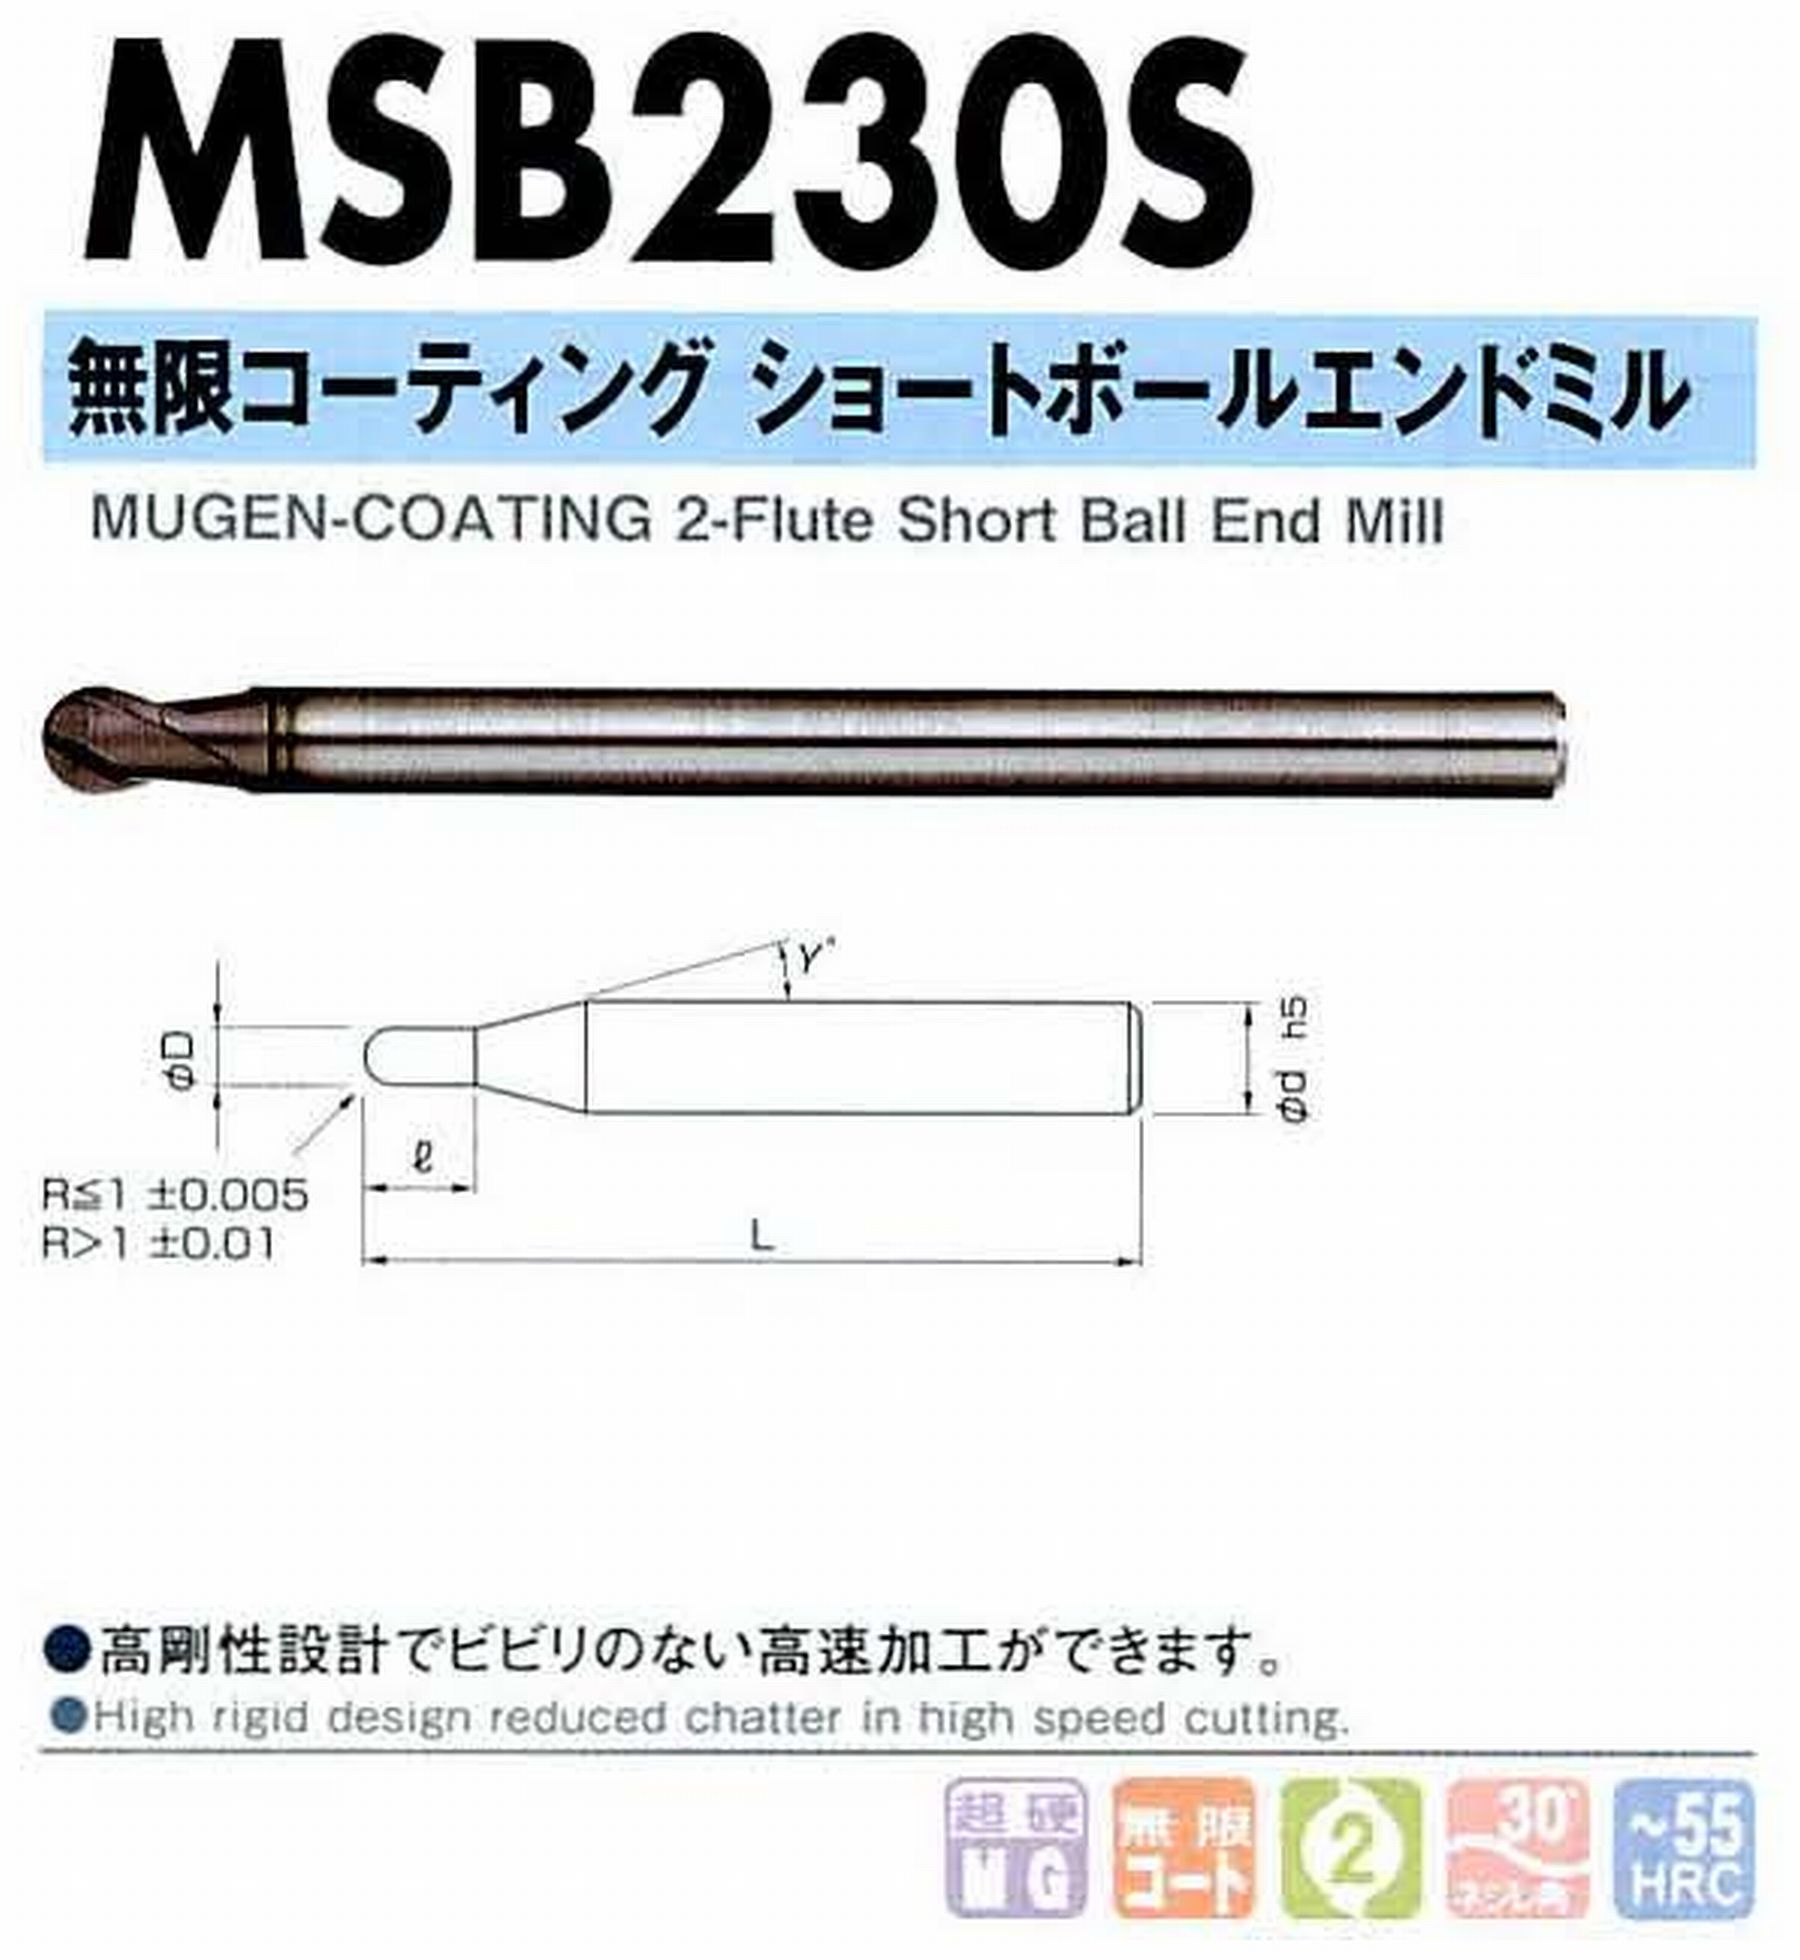 NS 日進工具 MSB230S 無限コーティングショートボールエンドミル コードNO．08-00530-00035 ボール半径R0.35 刃長0.7 刃径0.7 首角9° シャンク径4mm 全長50